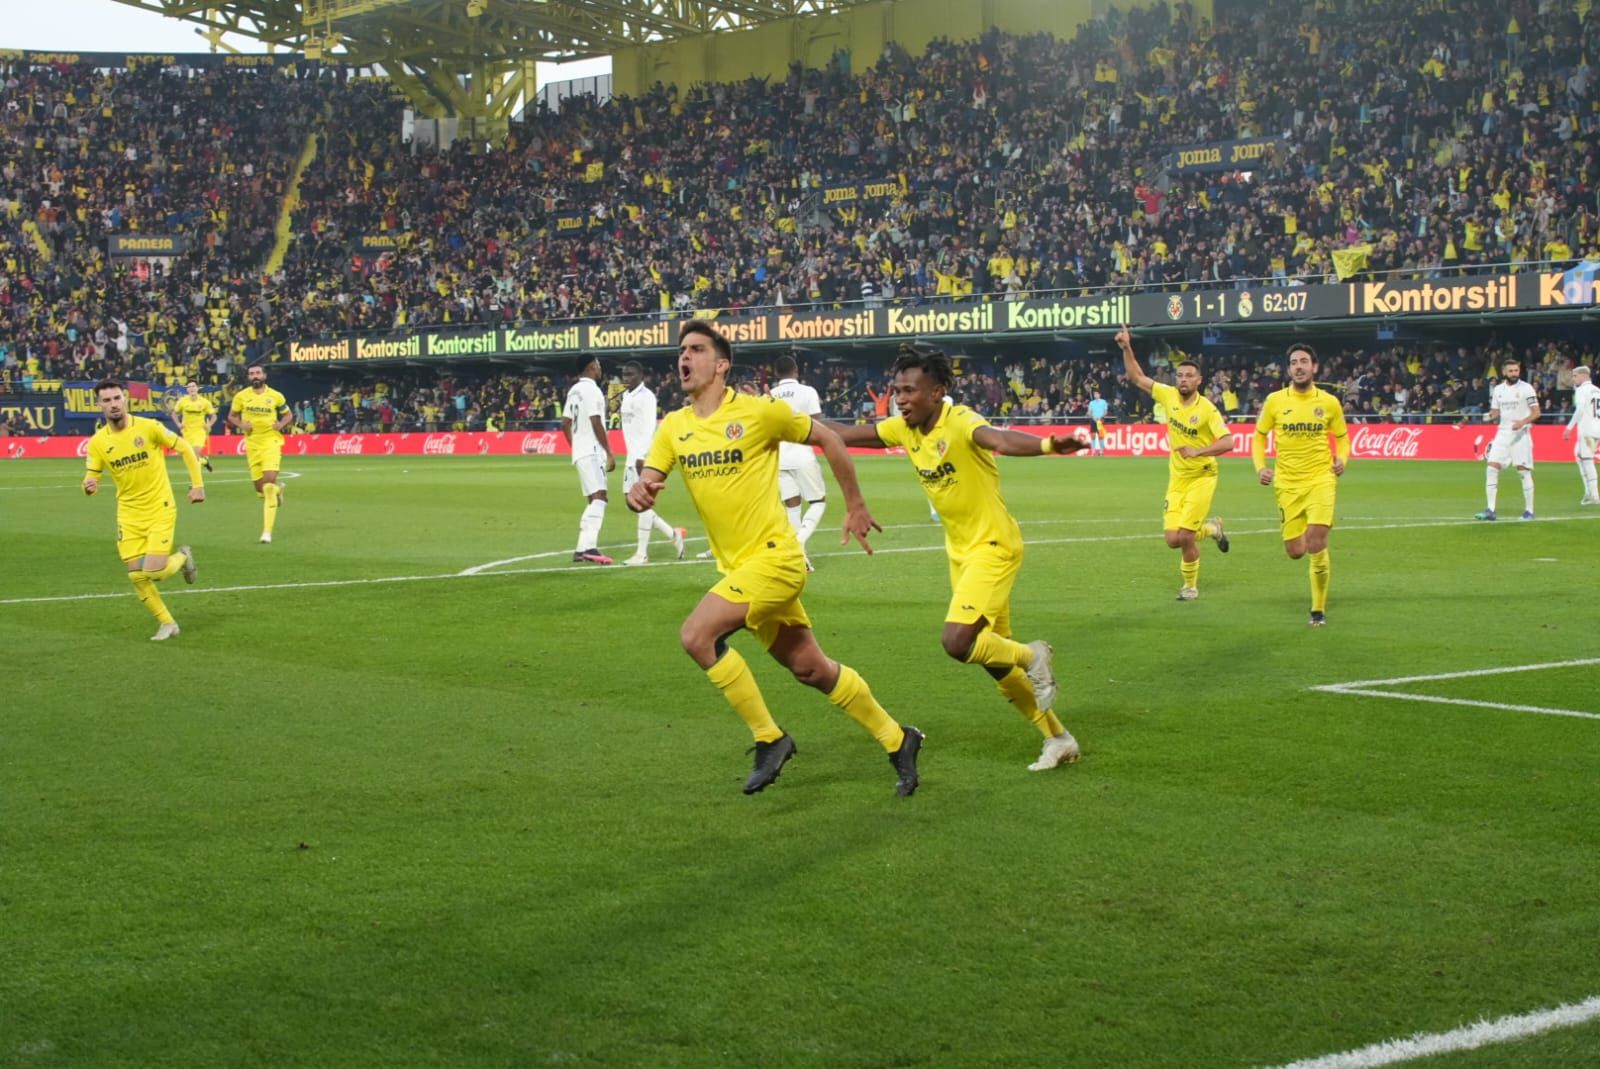 Las mejores imágenes del partido del Villarreal vs Real Madrid